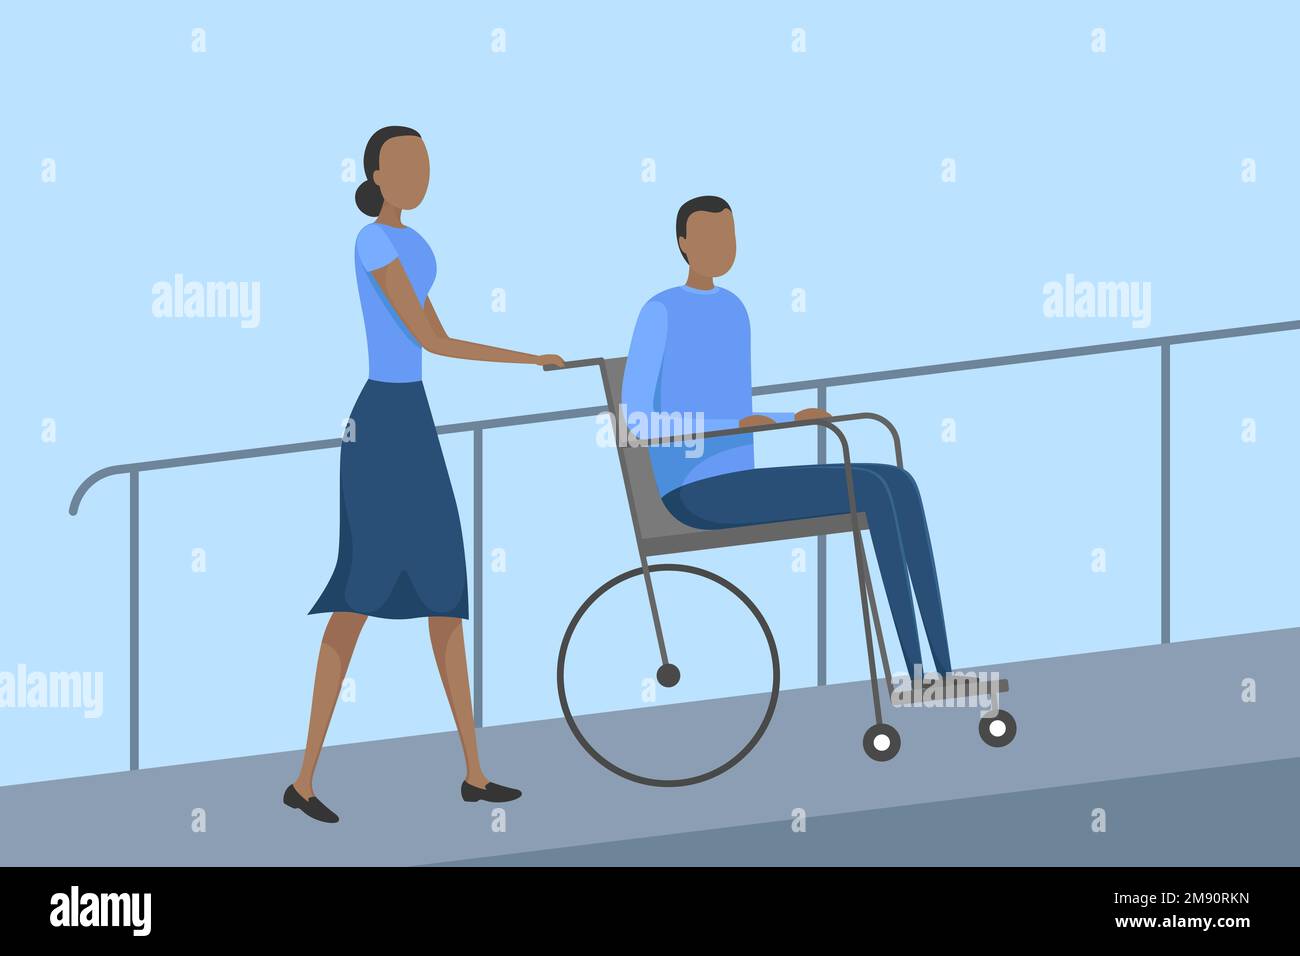 Aide poussant le fauteuil roulant avec une personne handicapée sur la rampe. Illustration vectorielle. Illustration de Vecteur